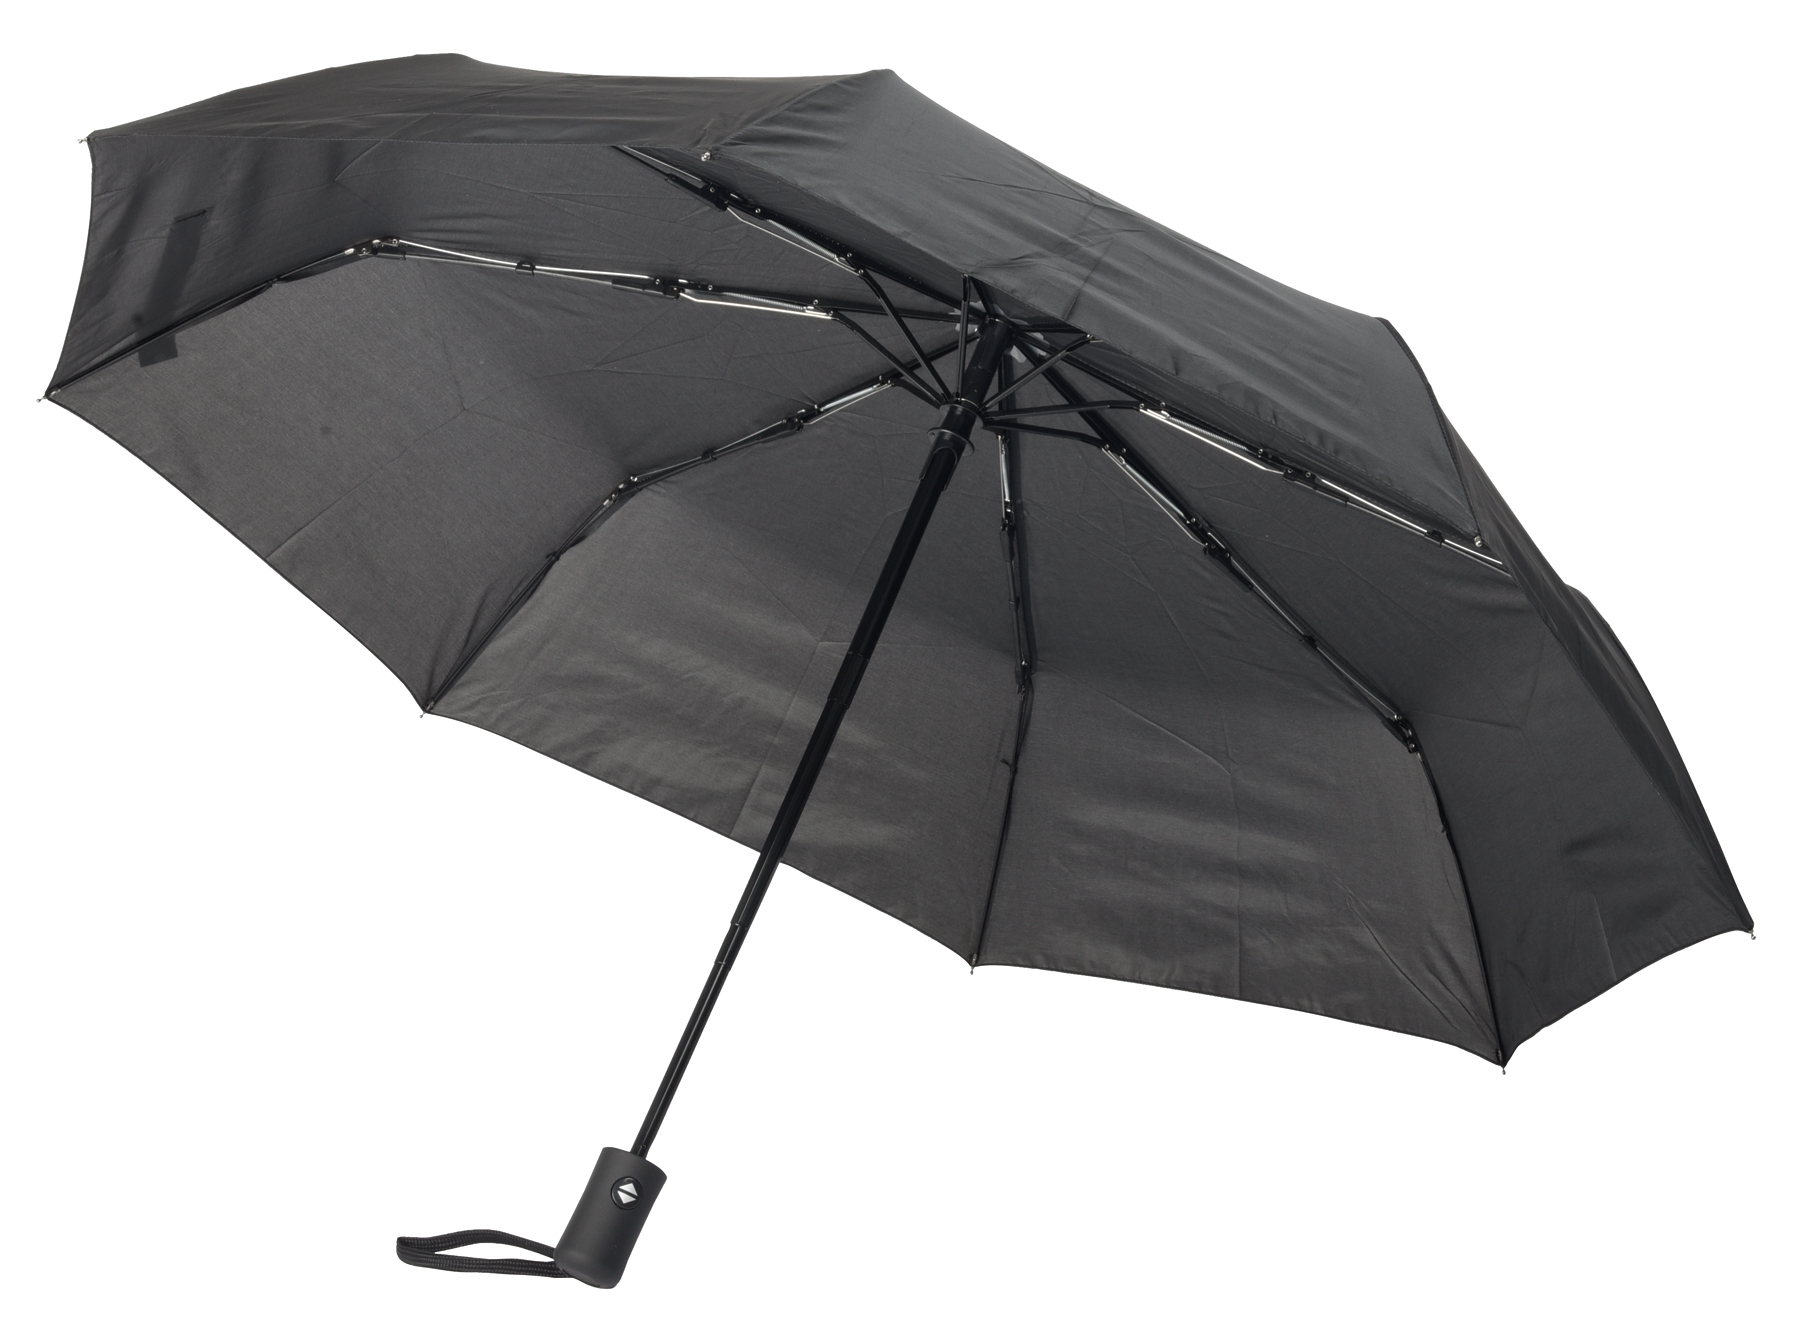 Automatický open/close větruvzdorný skládací polyesterový deštník PLOPP pouzdro v odpovídající barvě: 3dílná kovová konstrukce, žebra kombinace kov a sklolaminát, kovové špičky, pogumovaná rukojeť s poutkem, zapínání na suchý zip  - černá - foto